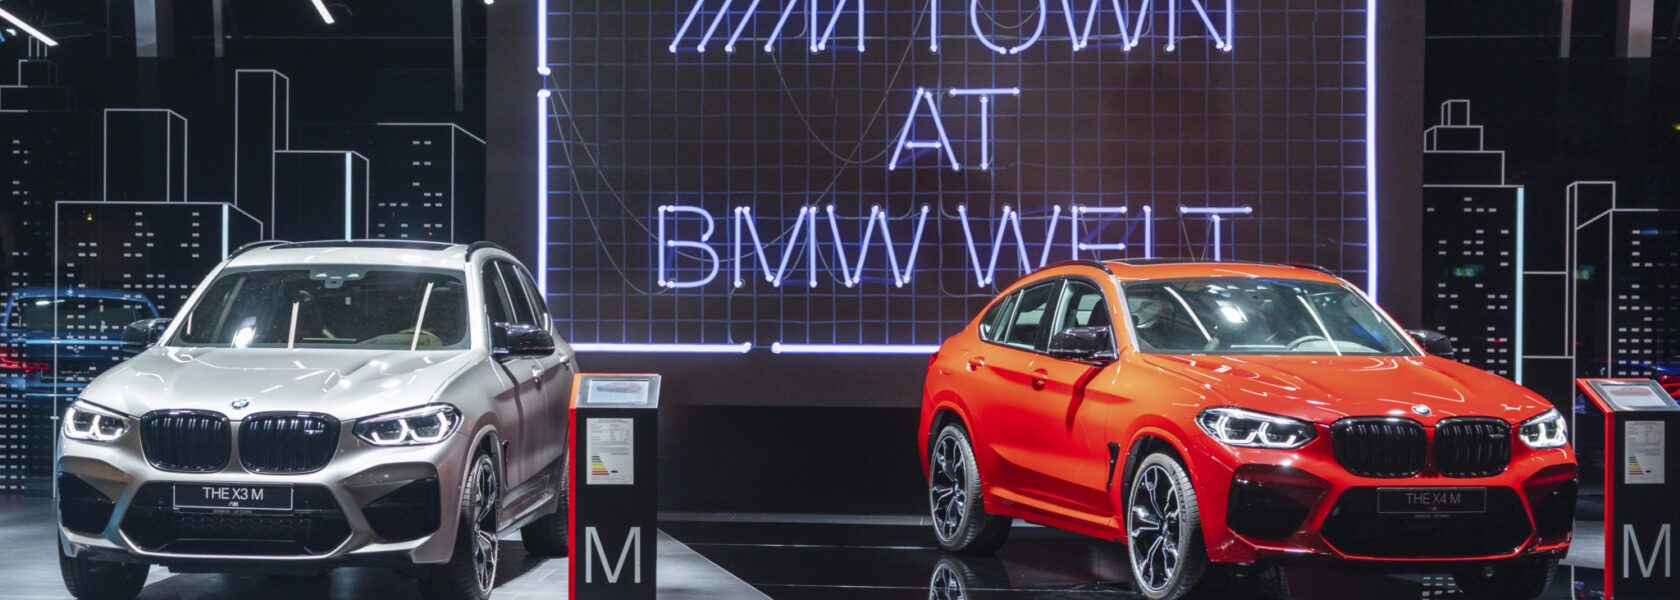 BMW M Town BMW Welt 2019